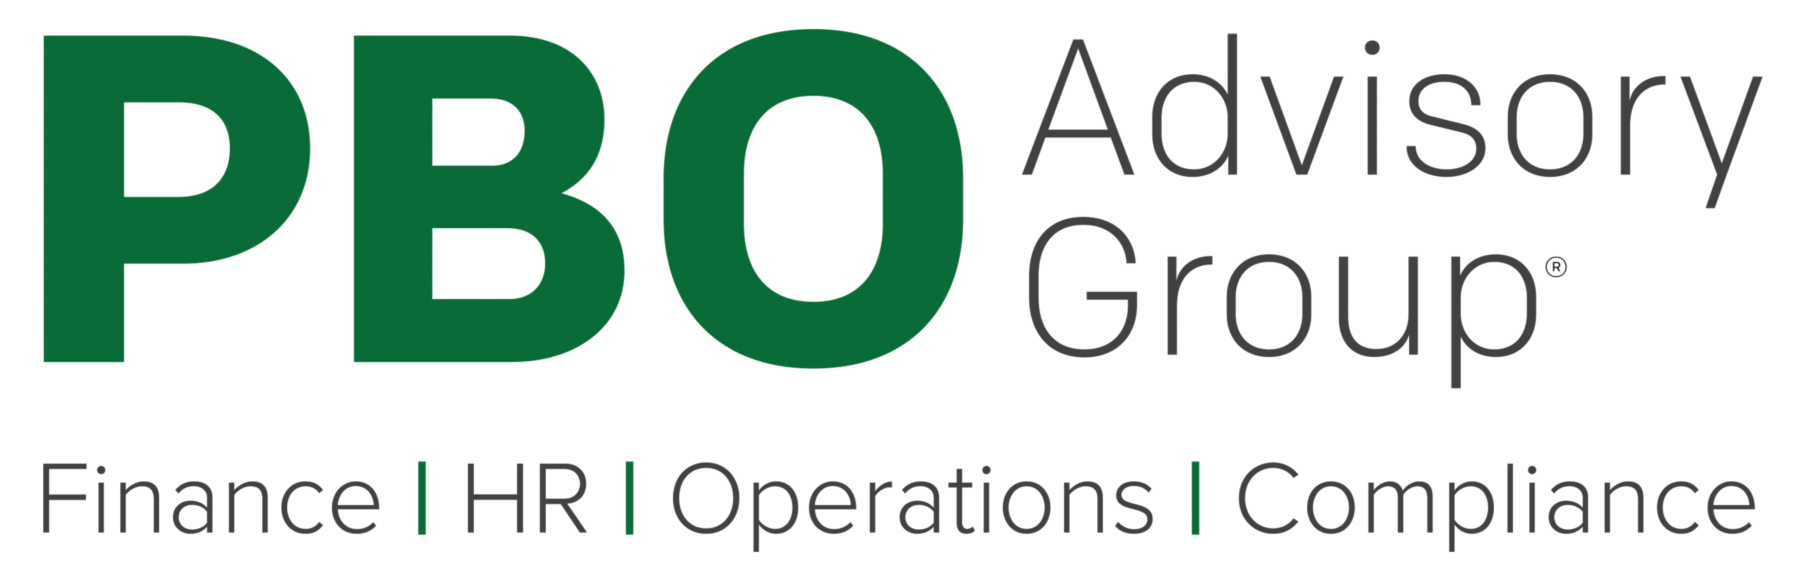 PBO Advisory Group logo